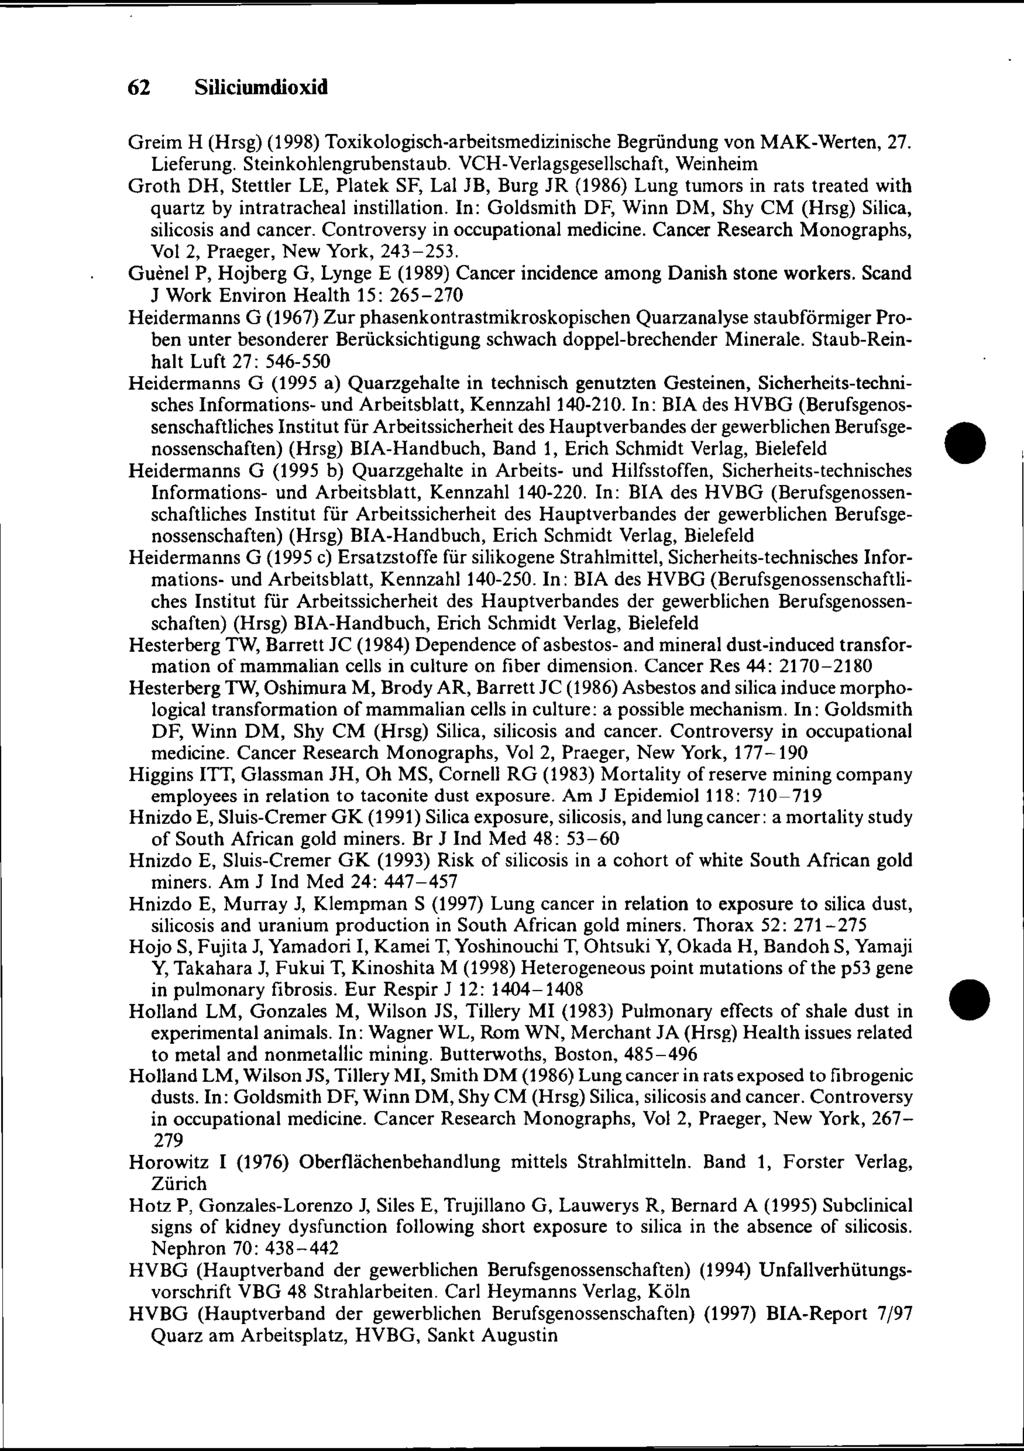 Greim H (Hrsg) (1998) Toxikologiseh-arbeitsmedizinische Begründung von MAK-Werten, 27. Lieferung. Steinkohlengrubenstaub.